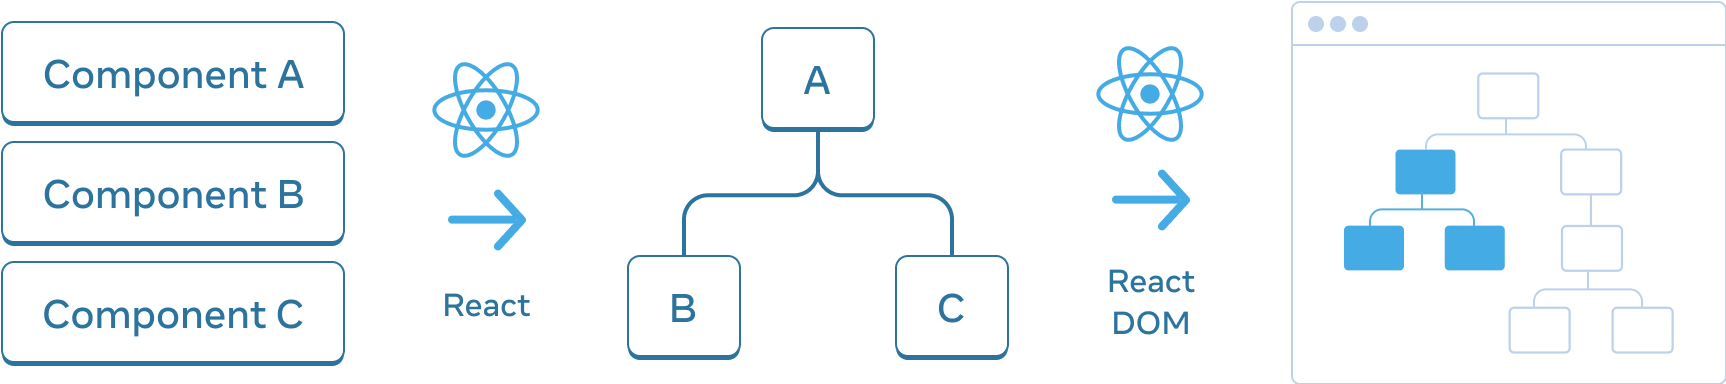 Yatay olarak düzenlenmiş üç bölümlü diyagram. İlk bölümde,'Bileşen A', 'Bileşen B' ve 'Bileşen C' etiketleri ile dikey olarak istiflenmiş üç dikdörtgen vardır. Bir sonraki bölmeye geçişte, üzerinde React logosu bulunan ve 'React' etiketli bir ok bulunur. Orta bölüm, 'A' olarak etiketlenmiş kök ve 'B' ve 'C' olarak etiketlenmiş iki alt bileşen ile bir bileşen ağacı içerir. Bir sonraki bölüm yine üzerinde React logosu bulunan ve 'React DOM' olarak etiketlenmiş bir ok kullanılarak geçilir. Üçüncü ve son bölüm, yalnızca bir alt kümesi vurgulanmış (orta bölümdeki alt ağacı gösteren) 8 düğümlü bir ağaç içeren bir tarayıcının şemasıdır.